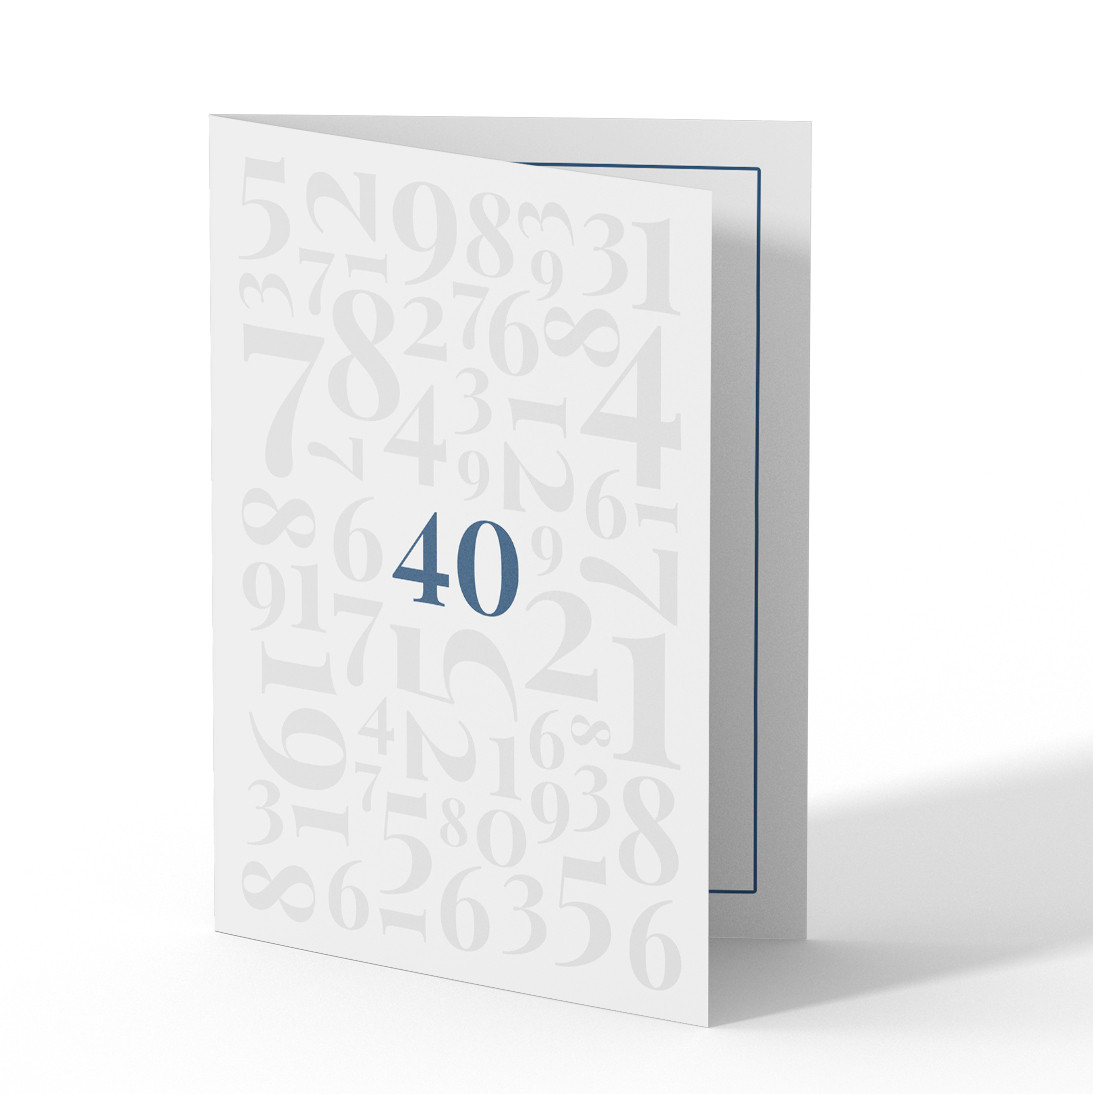 Einladungskarten Zum 40 Geburtstag Mit Zahlen